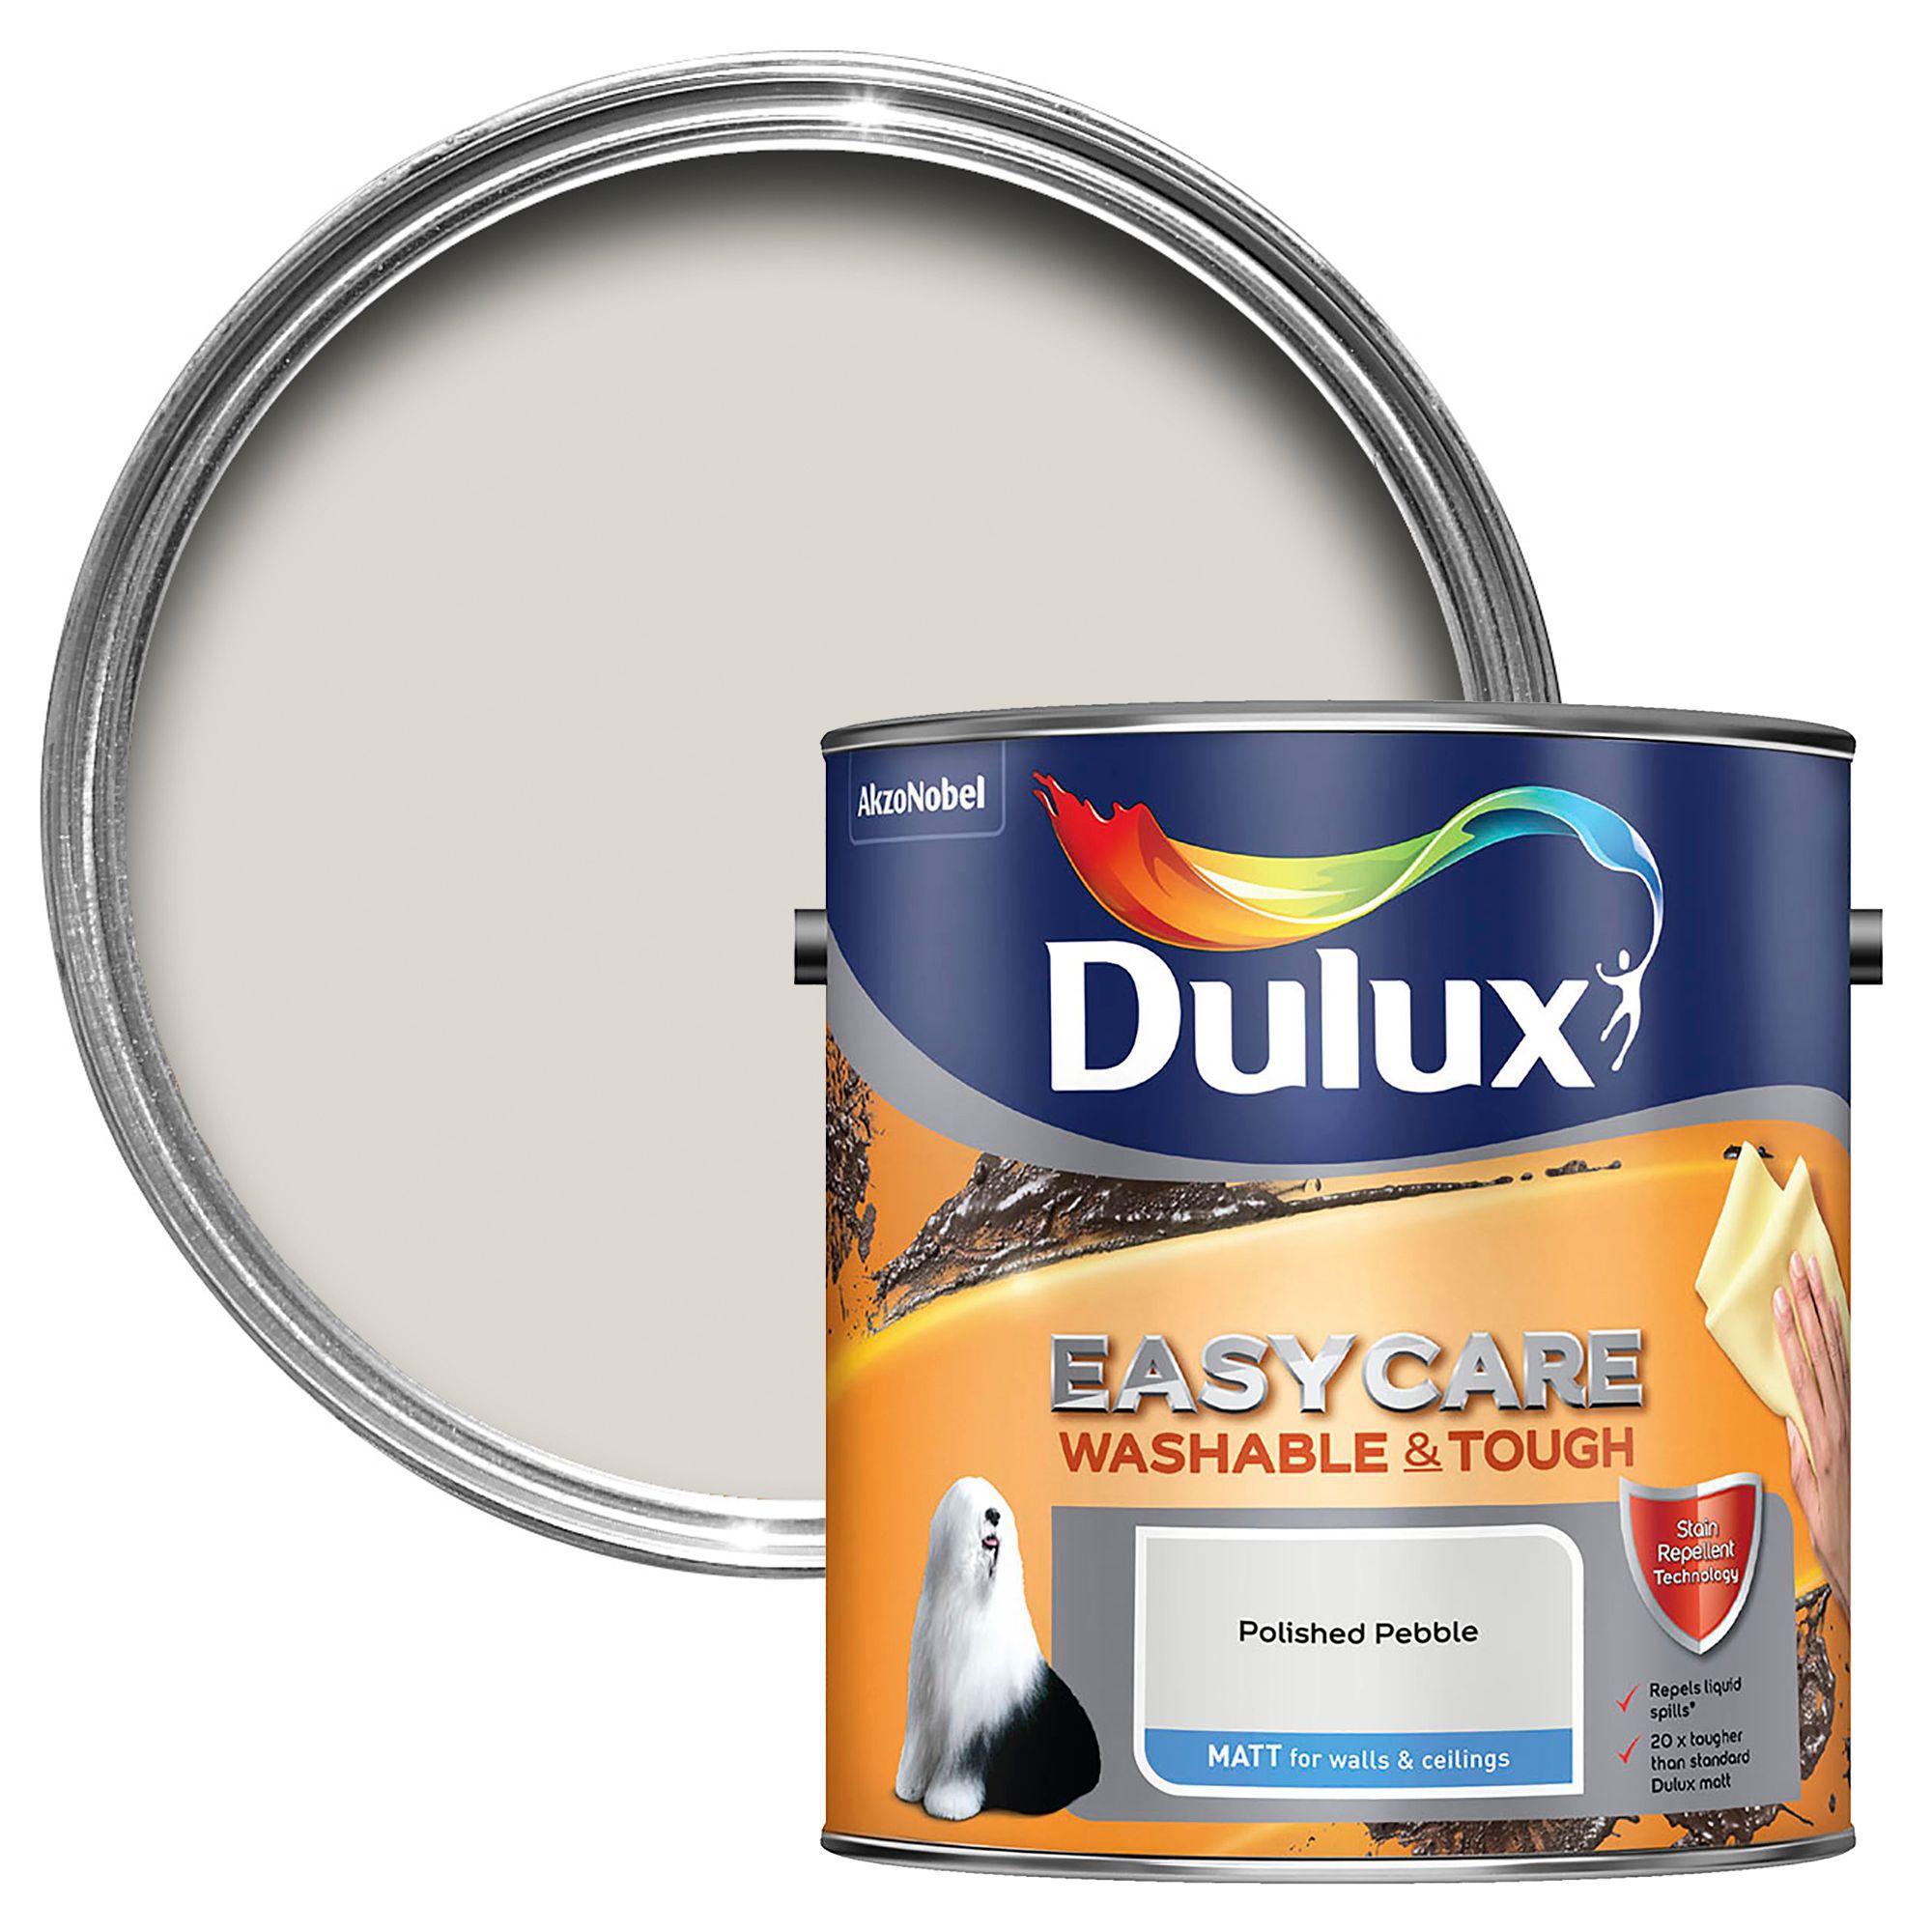  Dulux  Easycare Polished pebble Matt Emulsion paint  2 5L 